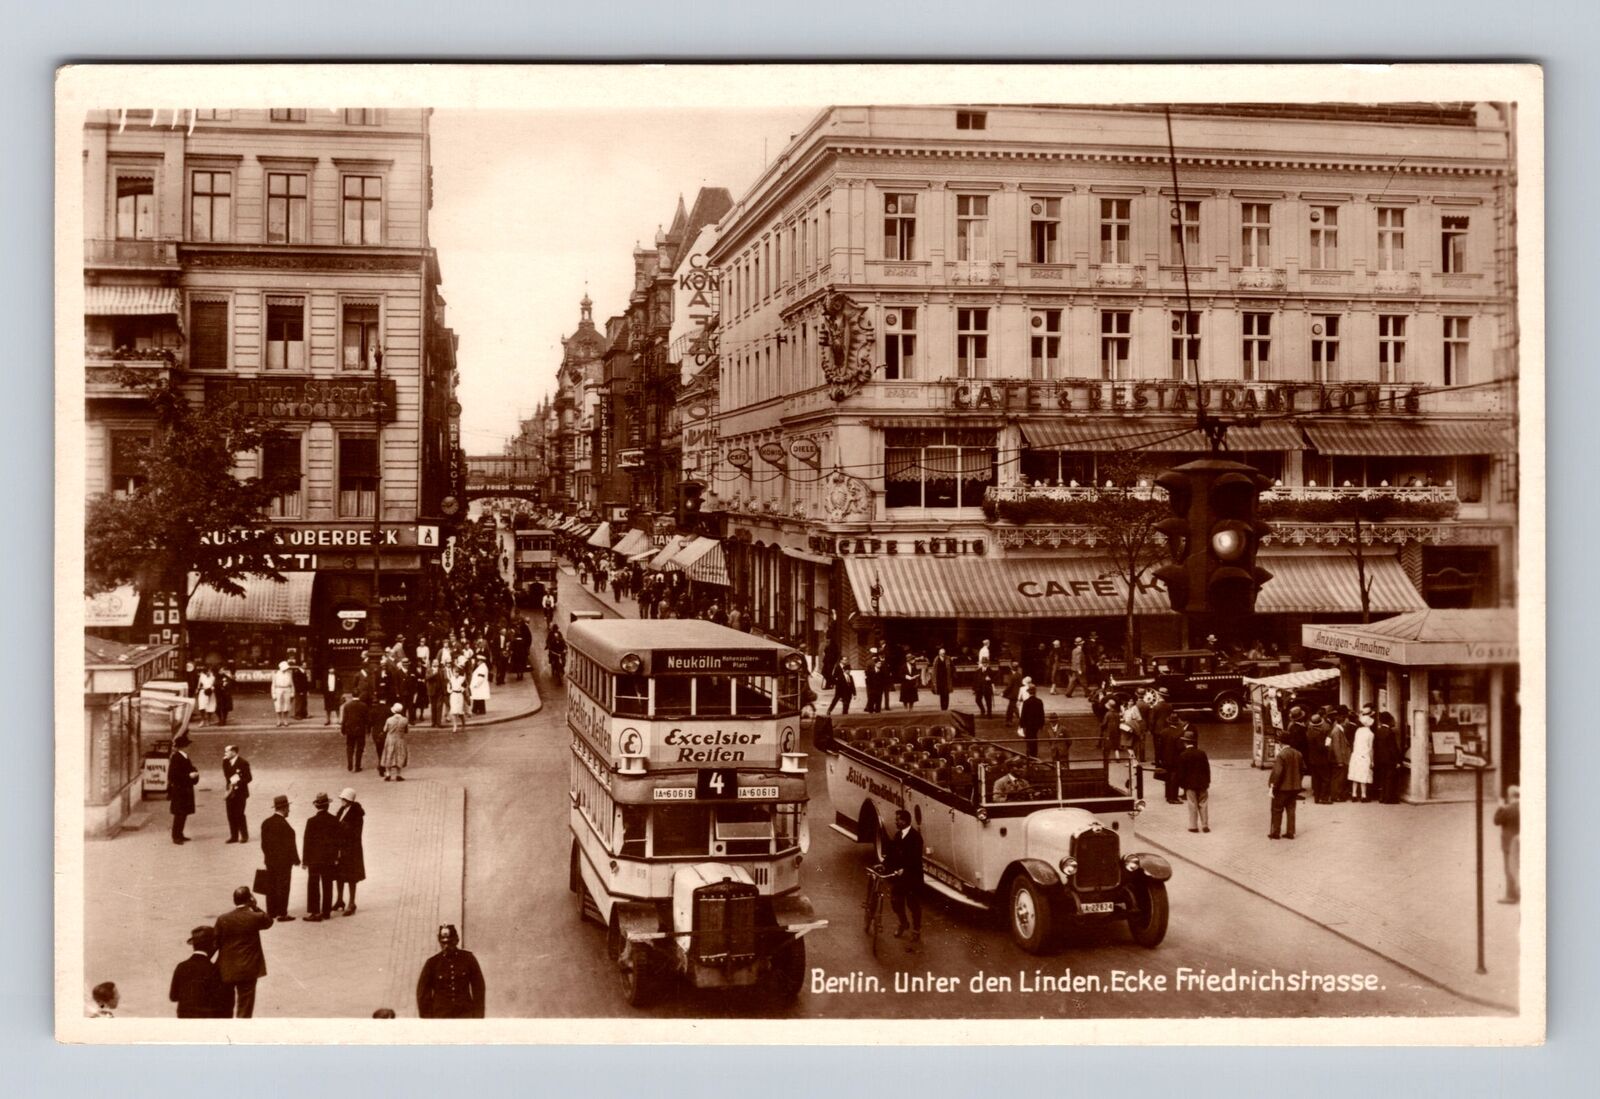 Berlin Germany, Unter den Linden, Ecke Friedrichstrasse Antique Vintage Postcard